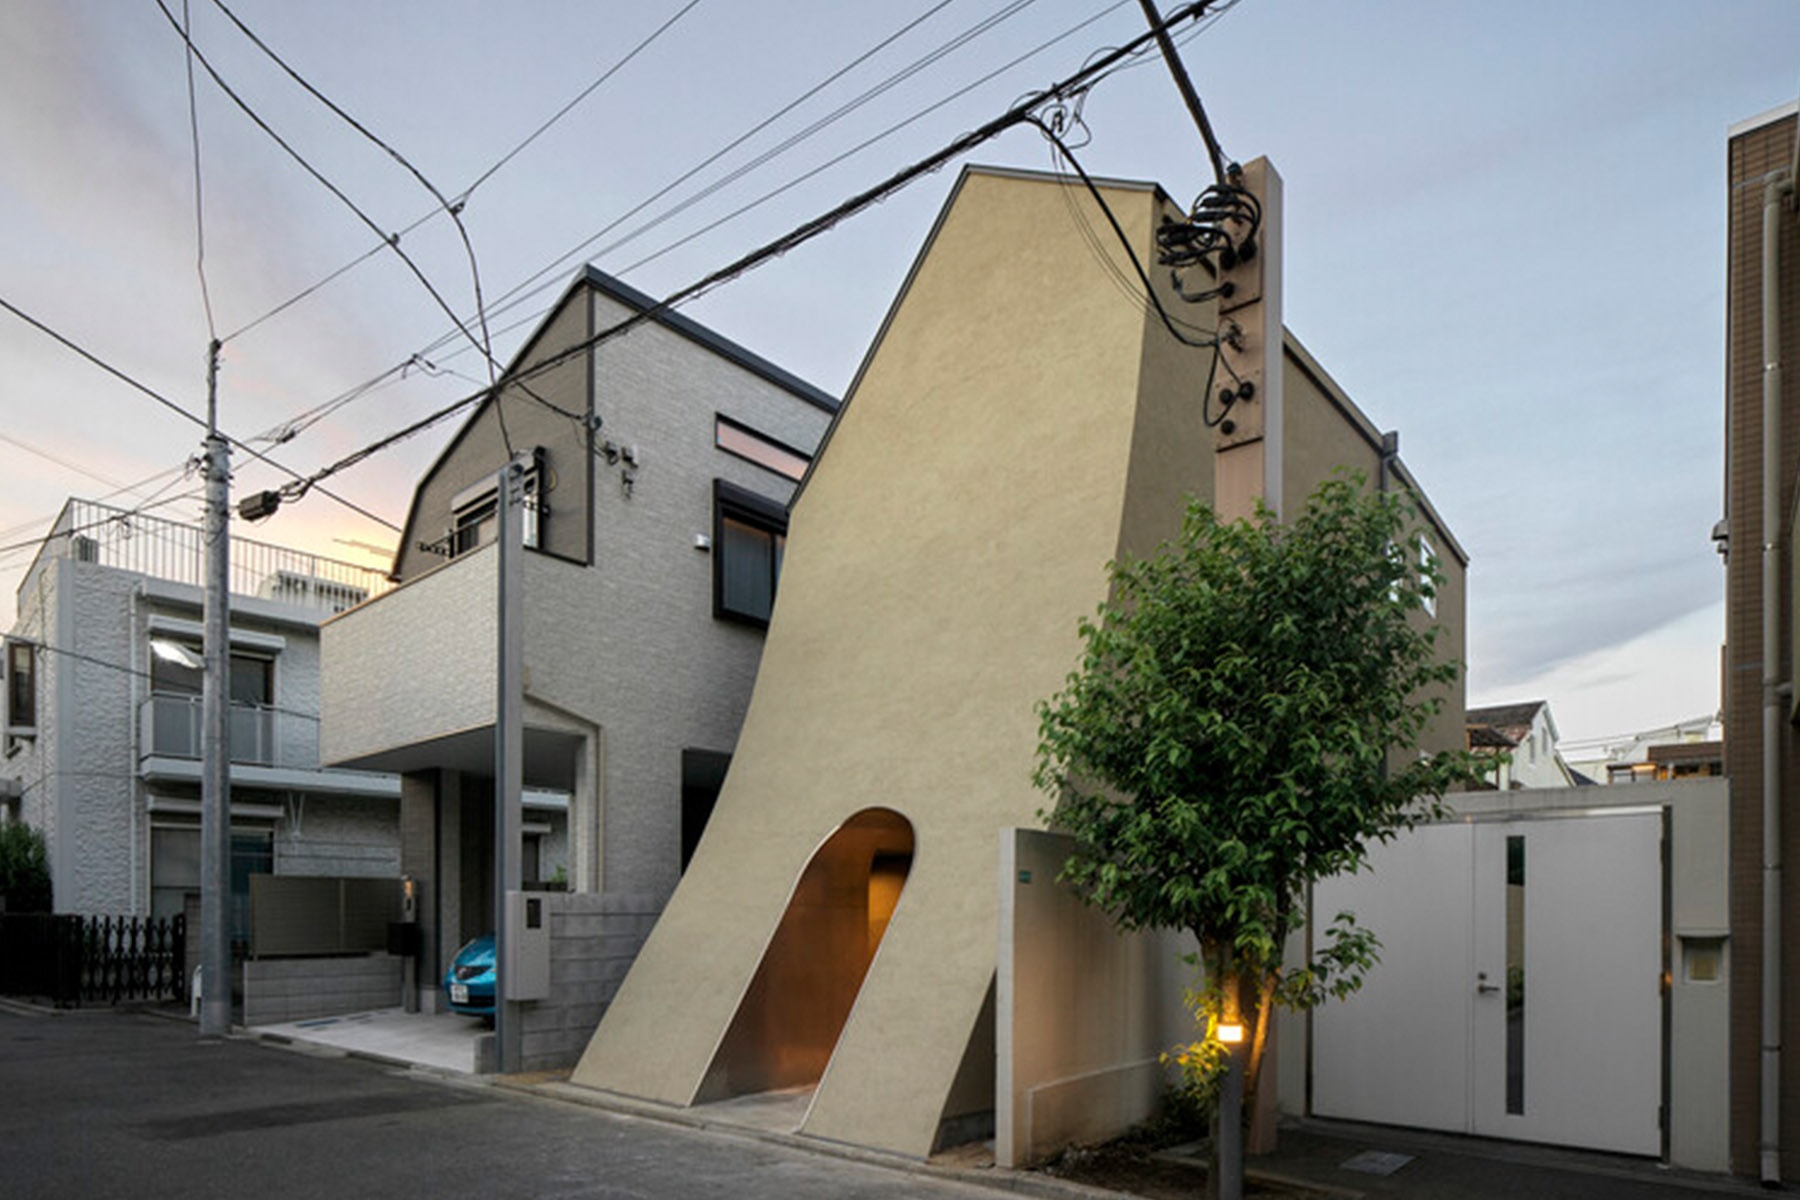 率先預覽 Tan Yamanouchi & AWGL 為日本漫畫家打造「錯層」住宅